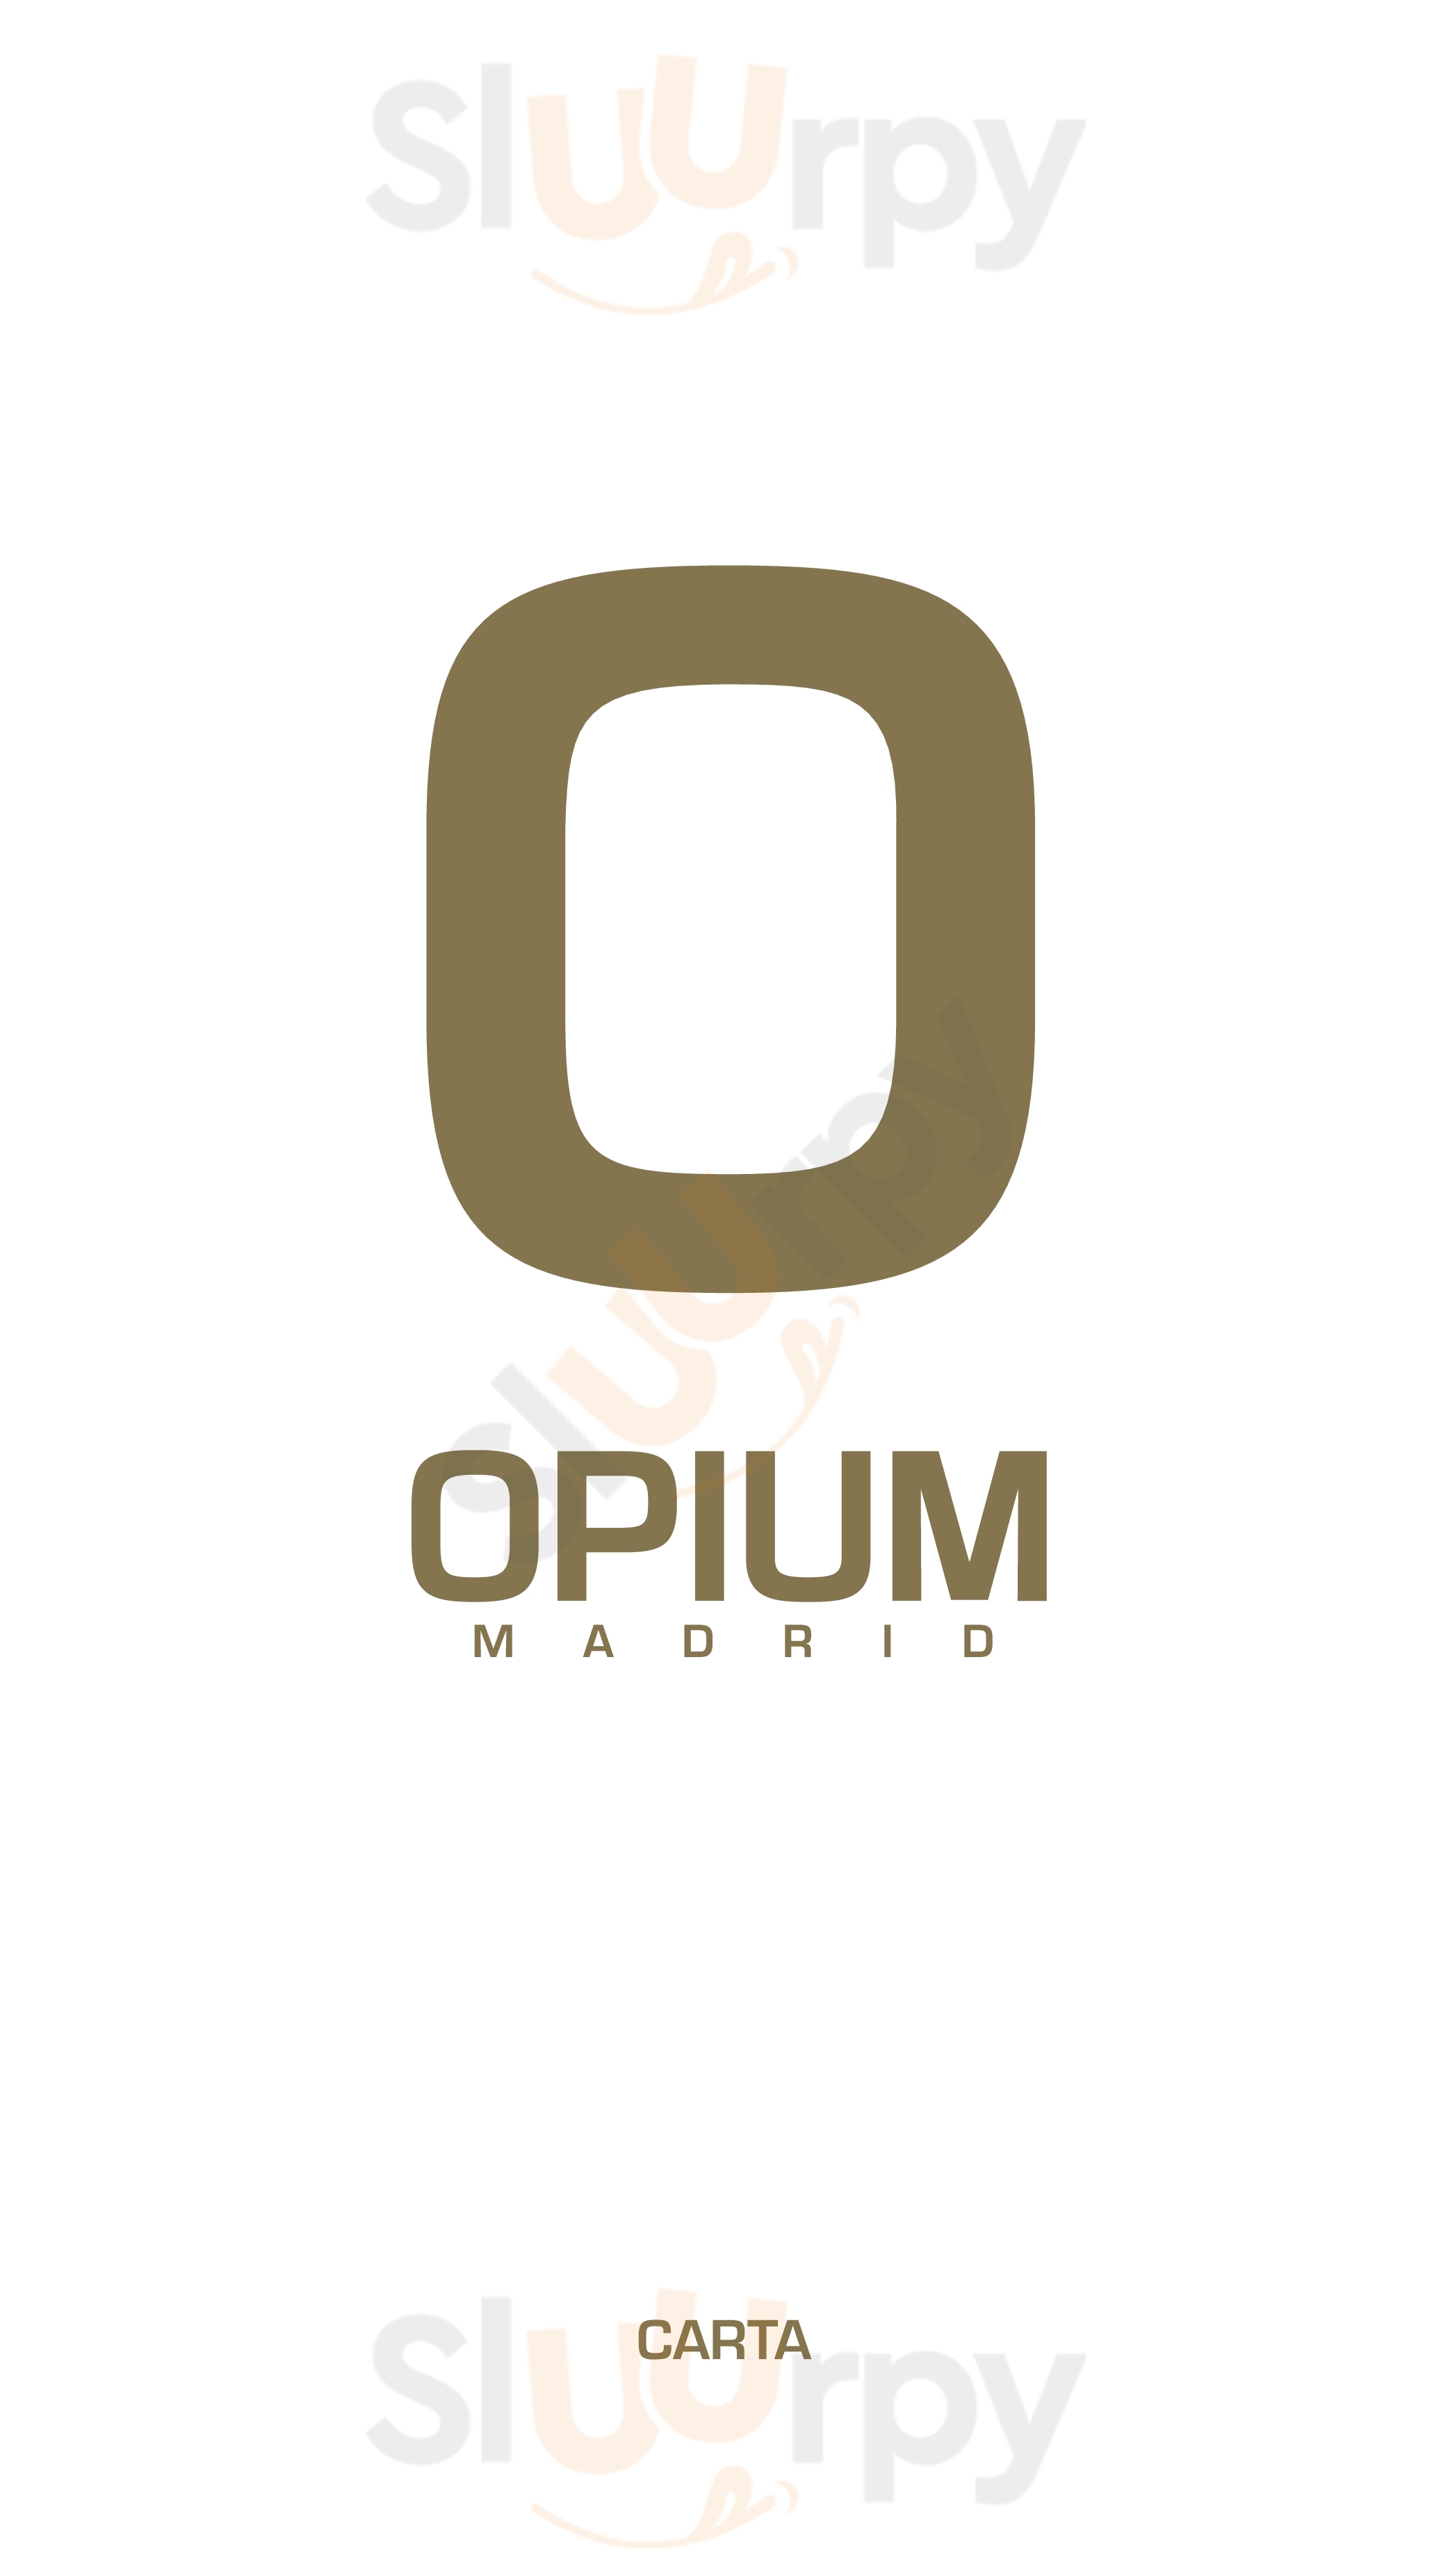 Opium Madrid Restaurant Madrid Menu - 1